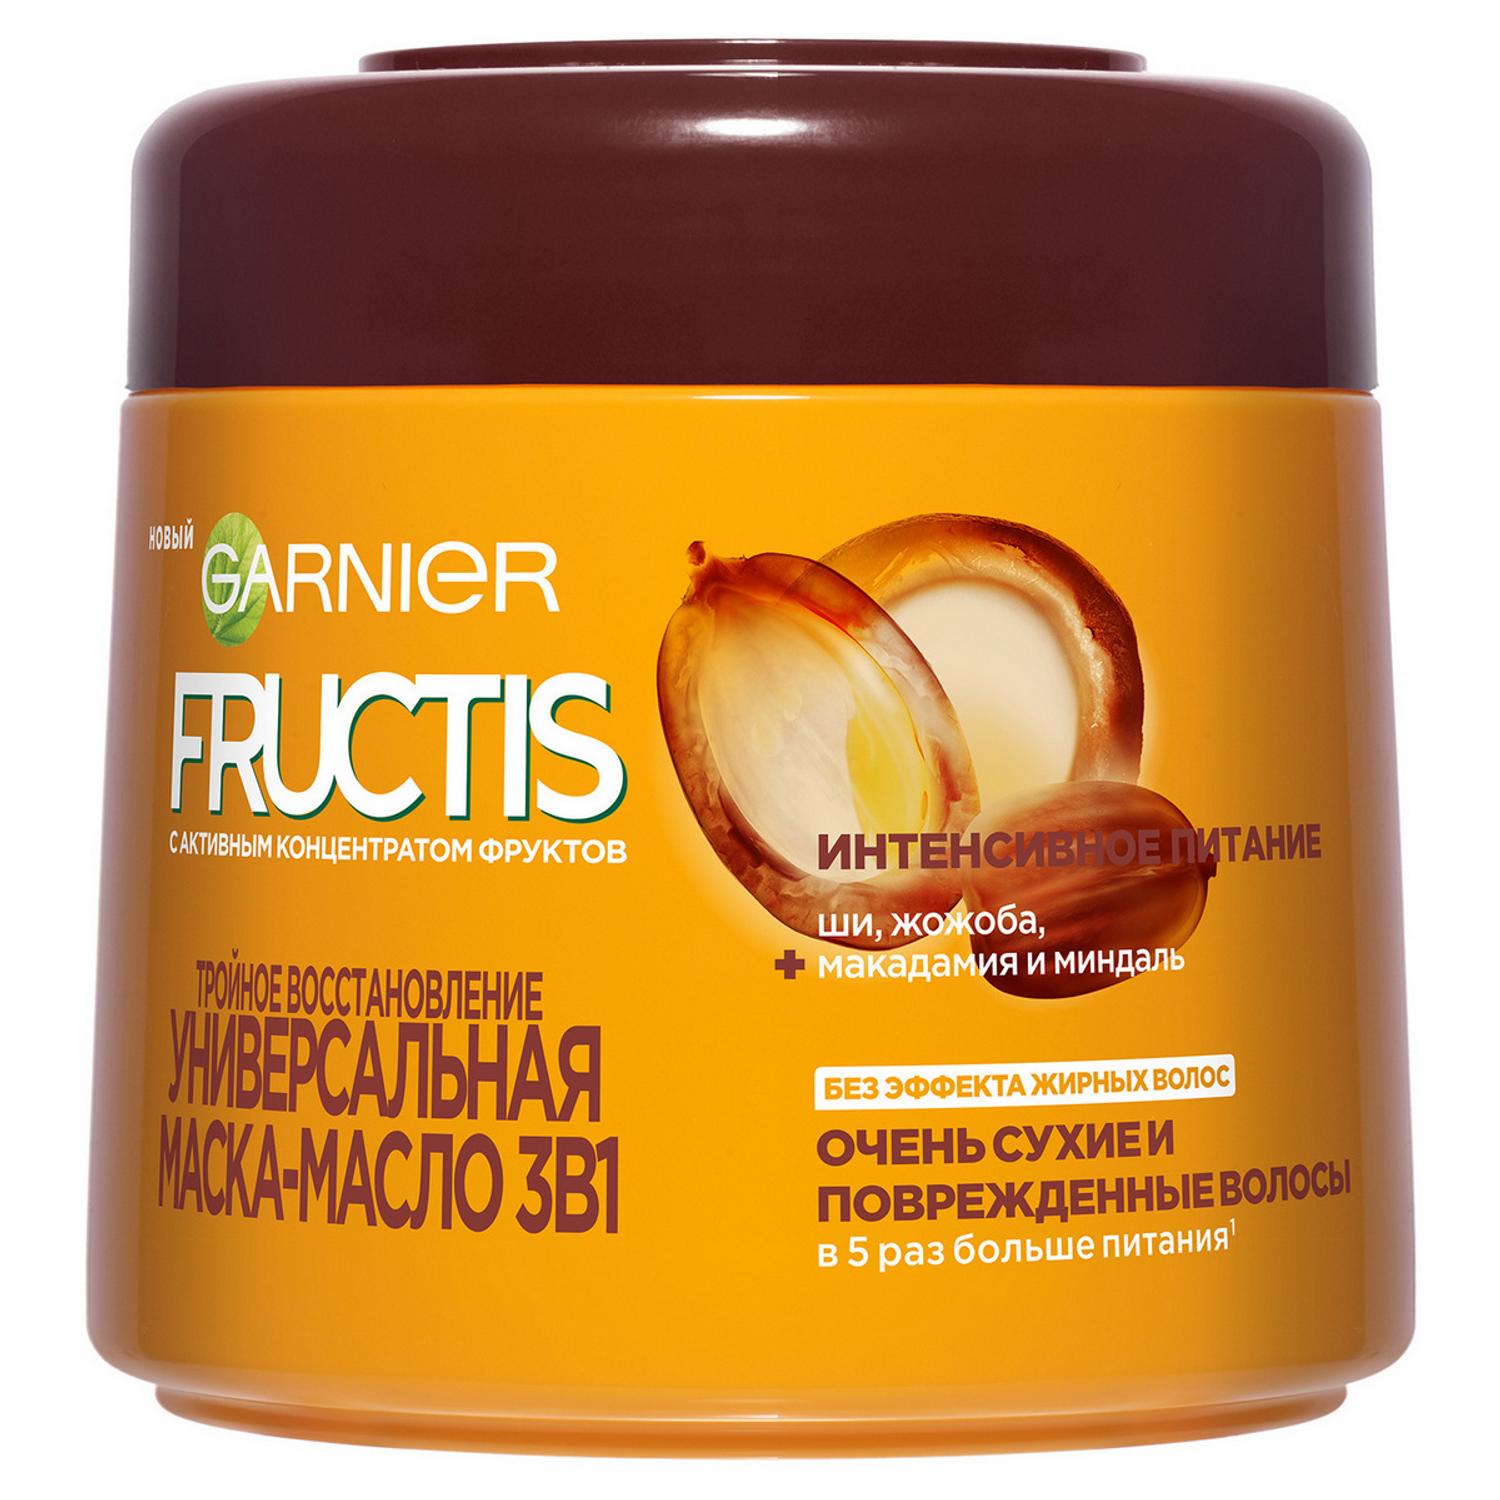 Маска-масло для волос Garnier Fructis Тройное восстановление 300 мл